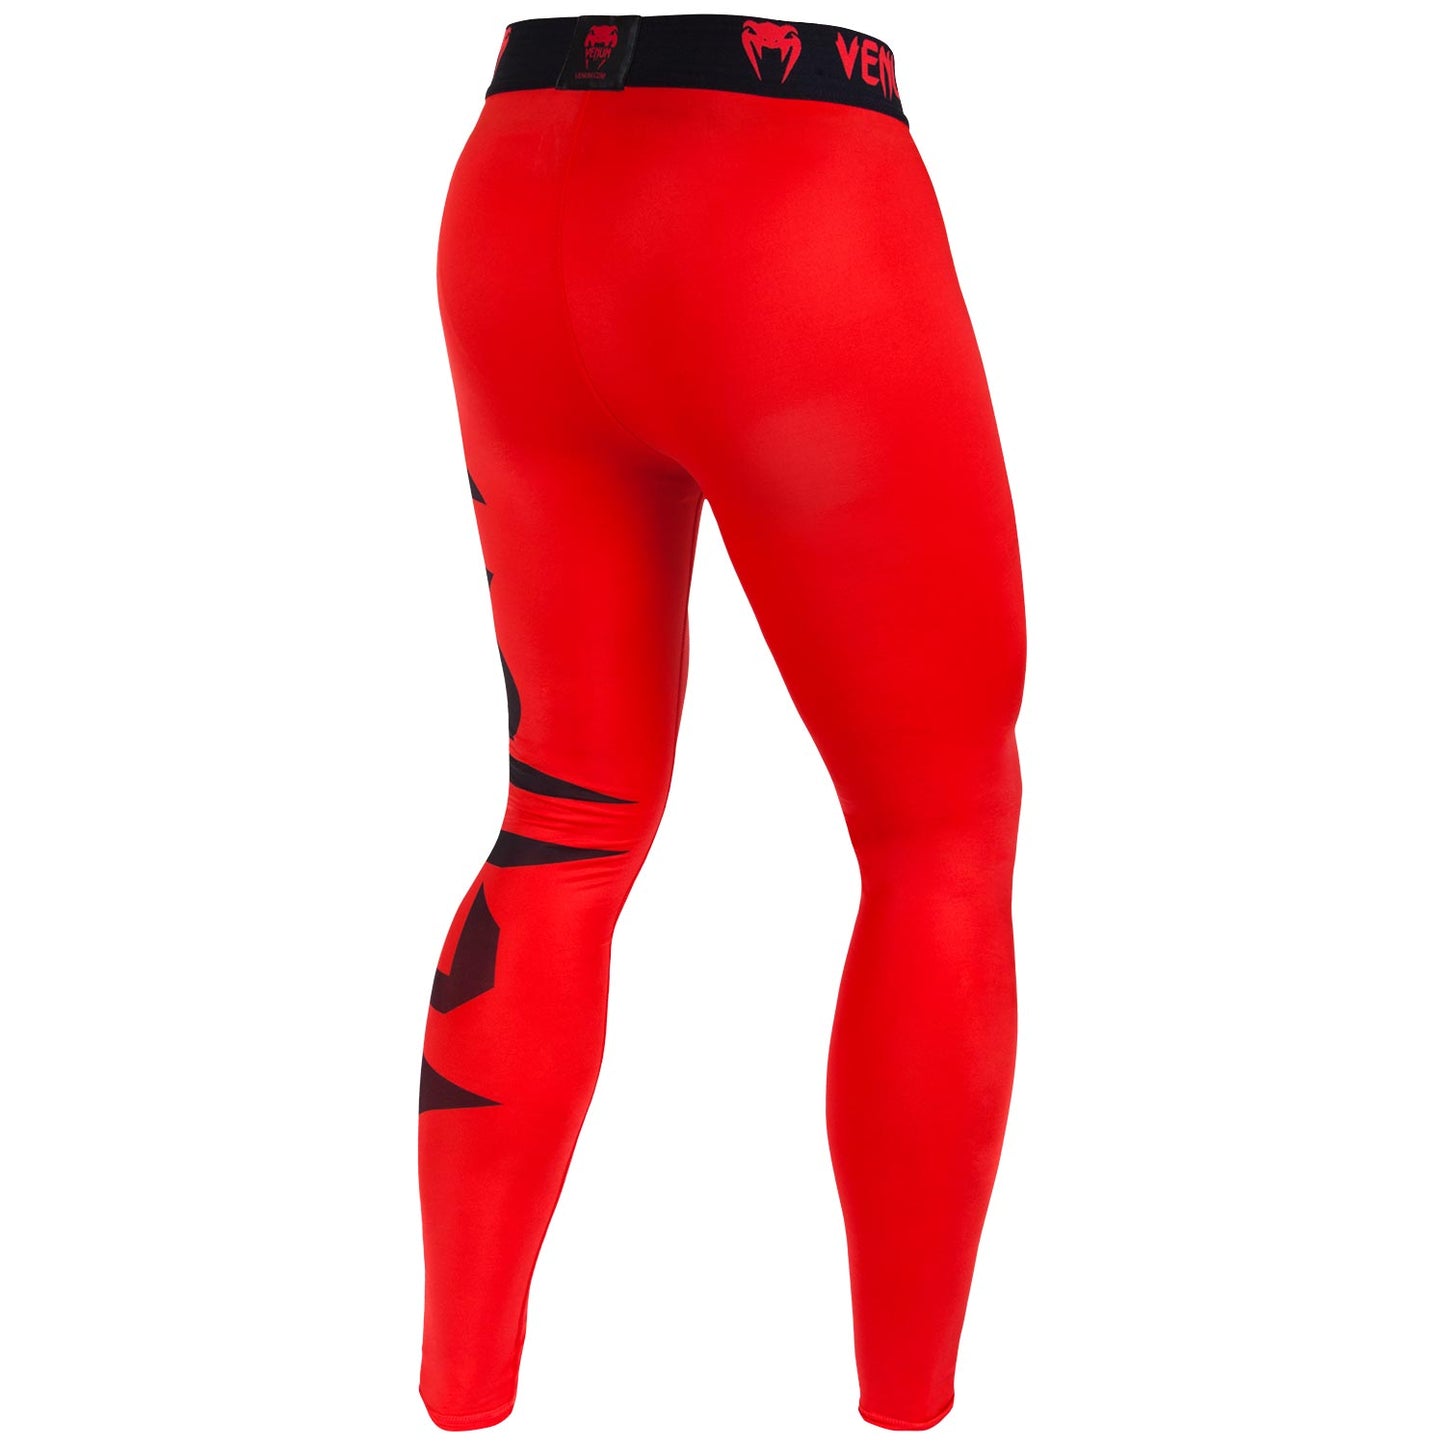 Pantalones de compresión Venum Giant - Rojo/Negro